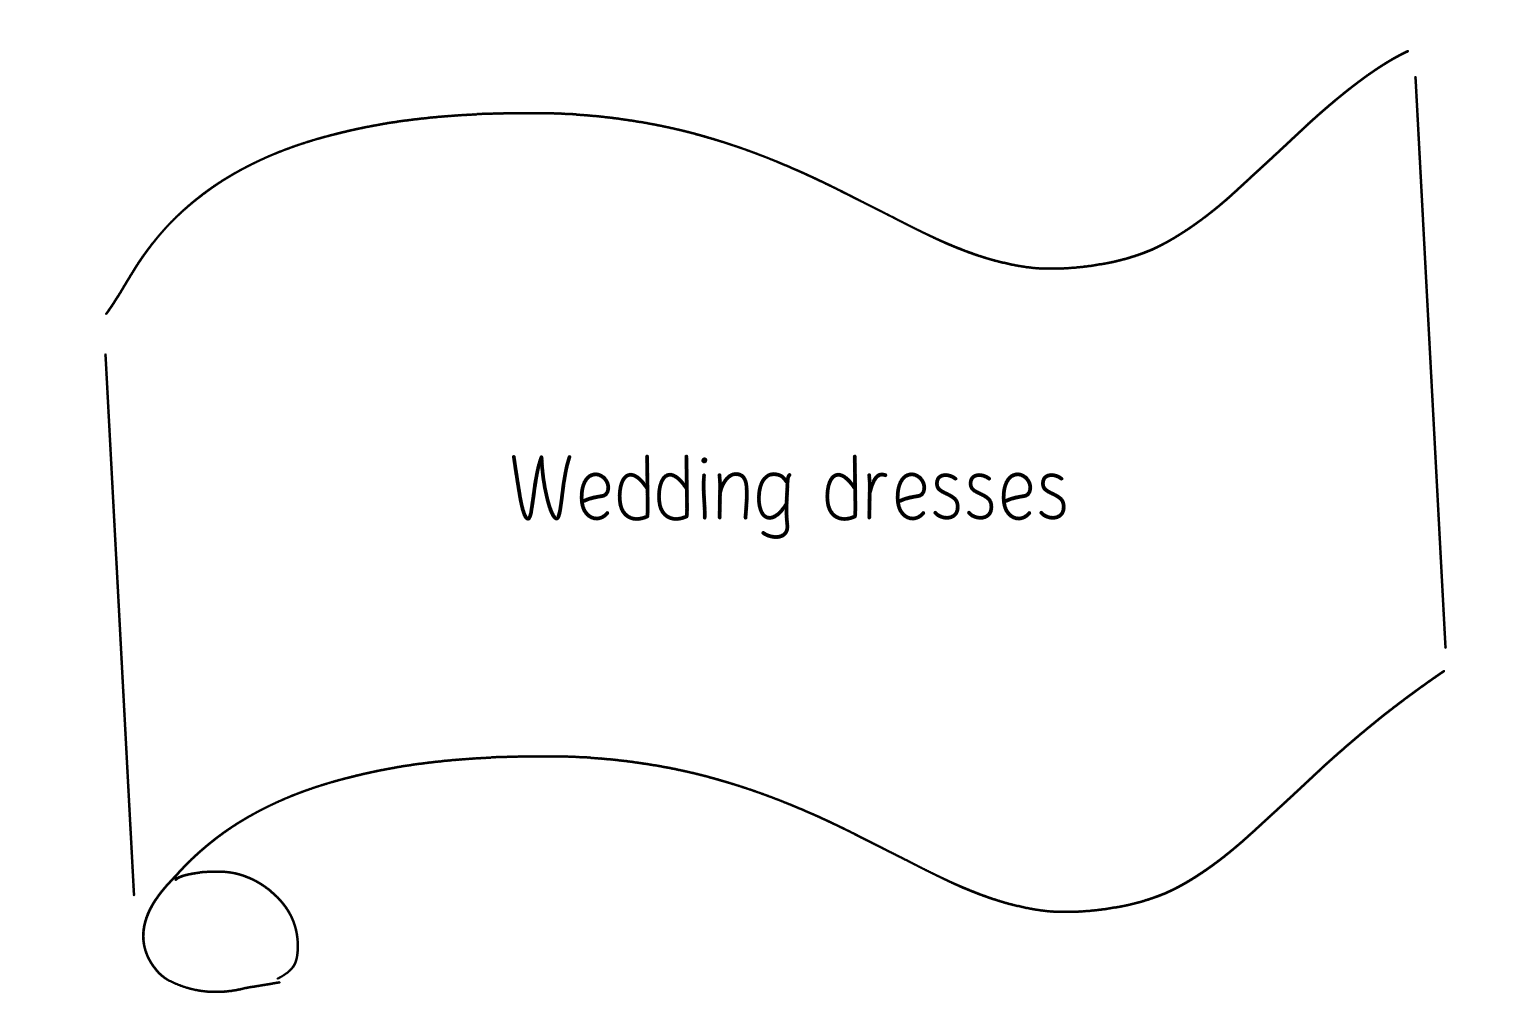 Illustration of Wedding Dresses and Bridal Shops